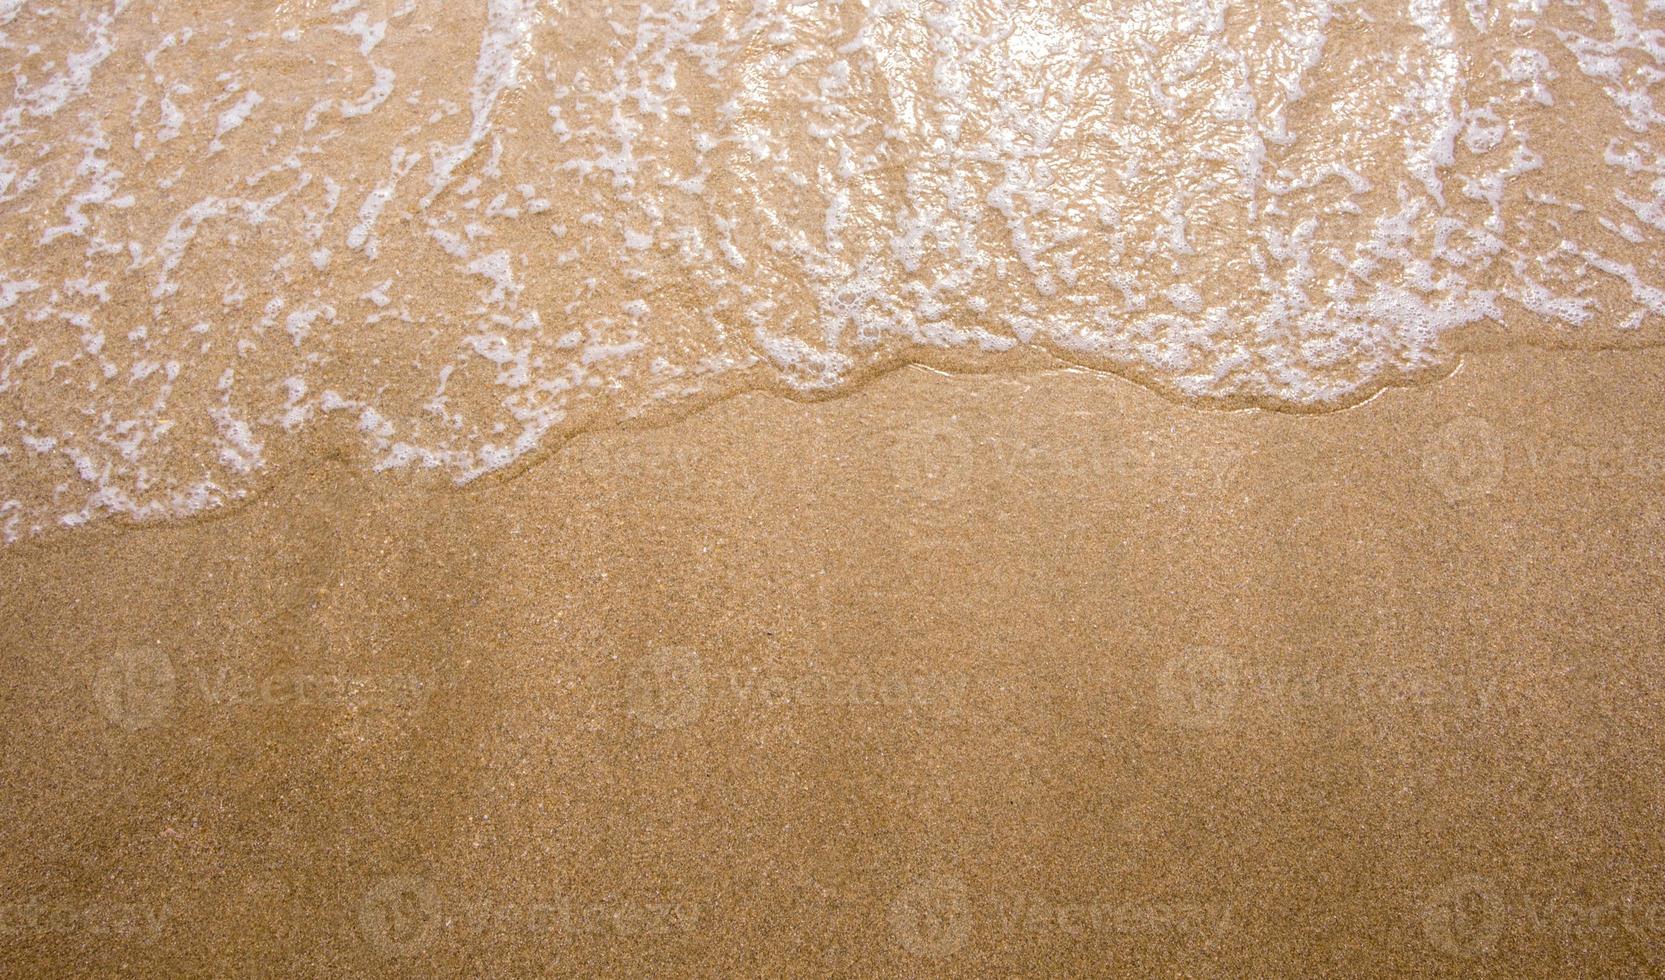 bolla bianca dell'onda del mare sulla spiaggia foto